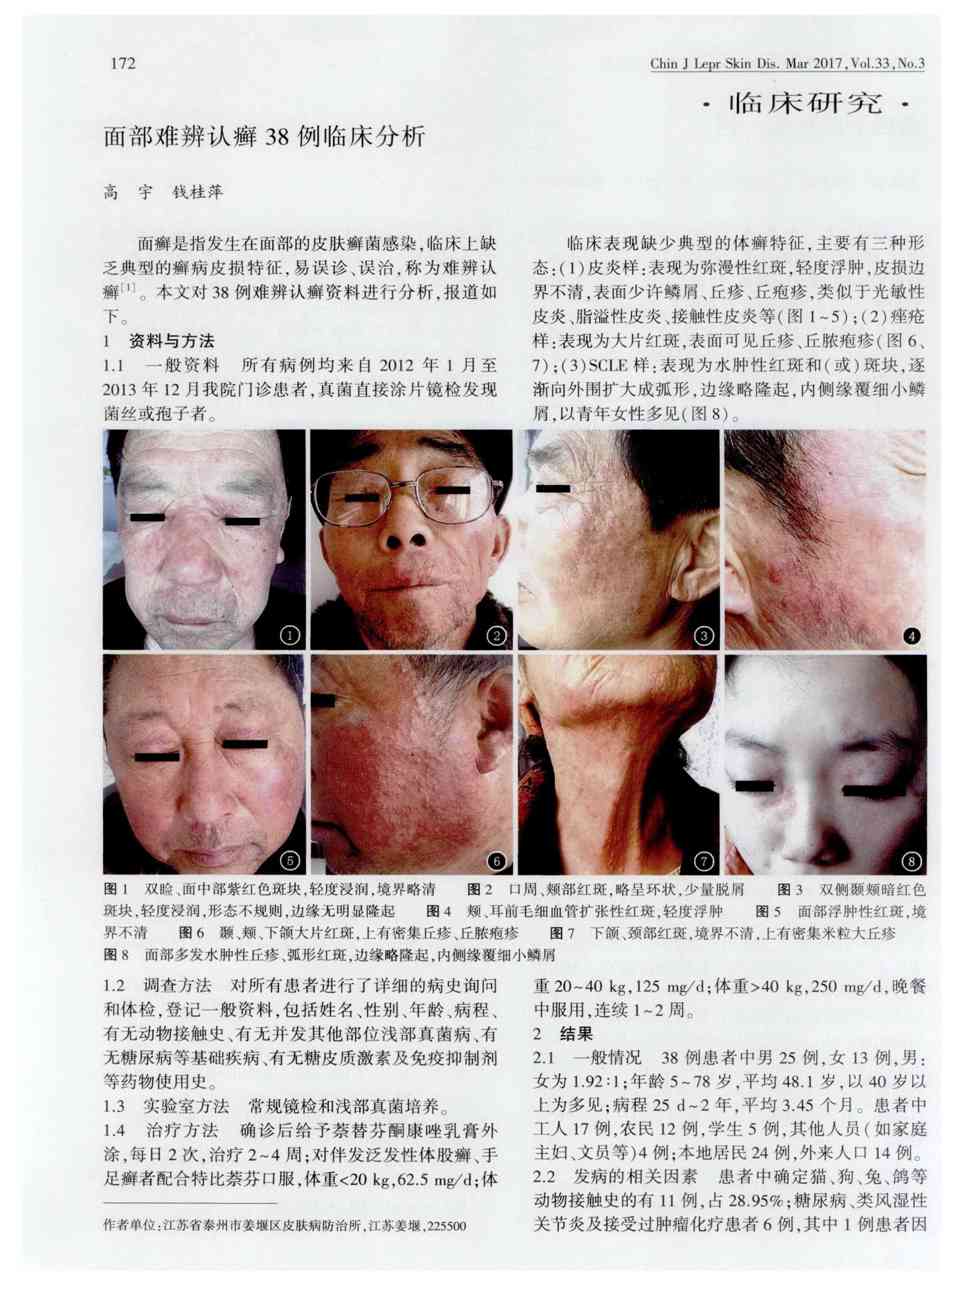 2    面癣是指发生在面部的皮肤癣菌感染,临床上缺乏典型的癣病皮损